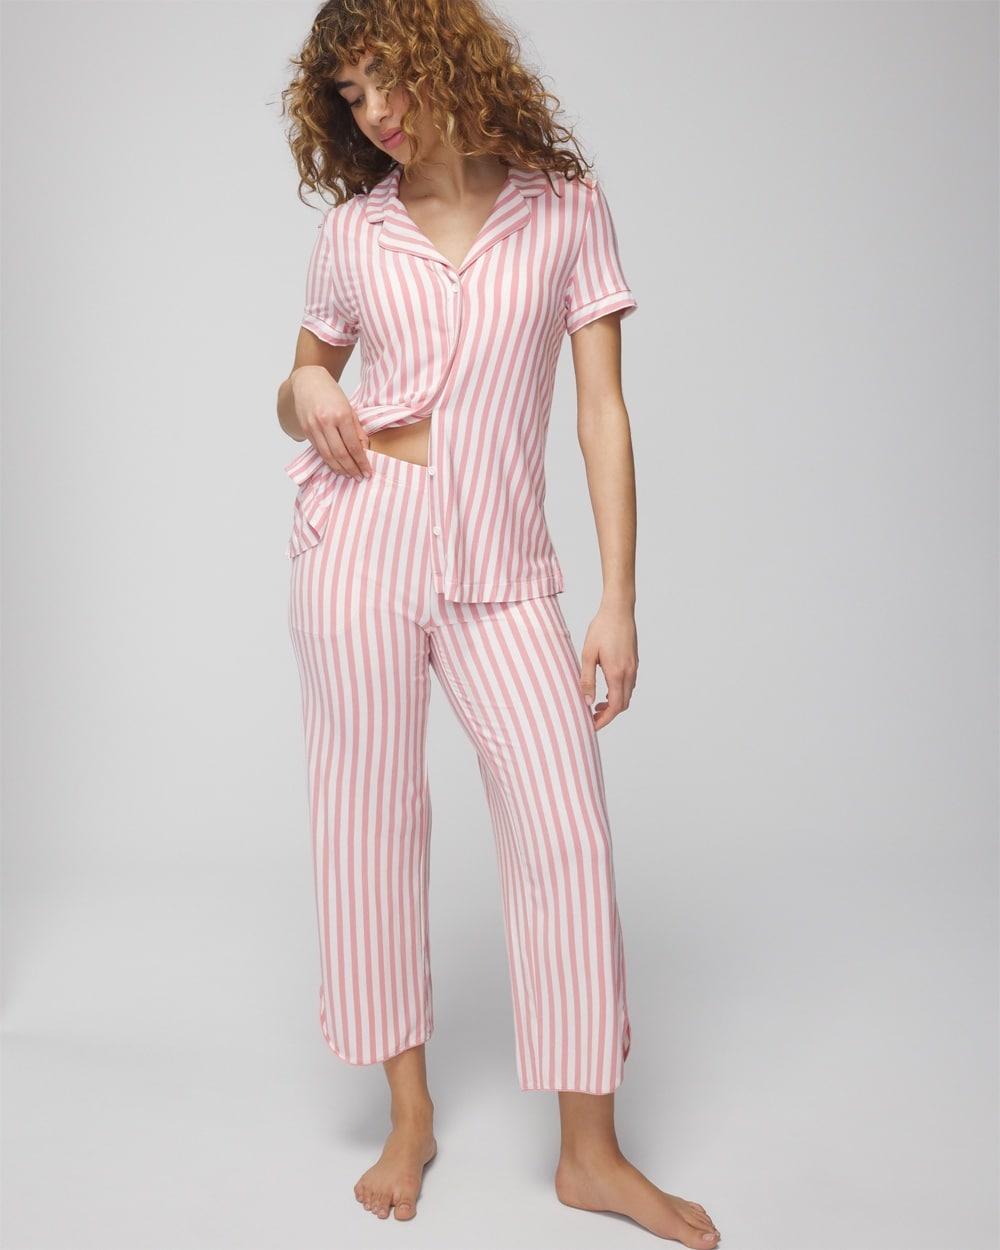 Soma Women's Cool Nights Cropped Pajama Pants In Capri Stripe Blush Pink Size Medium |